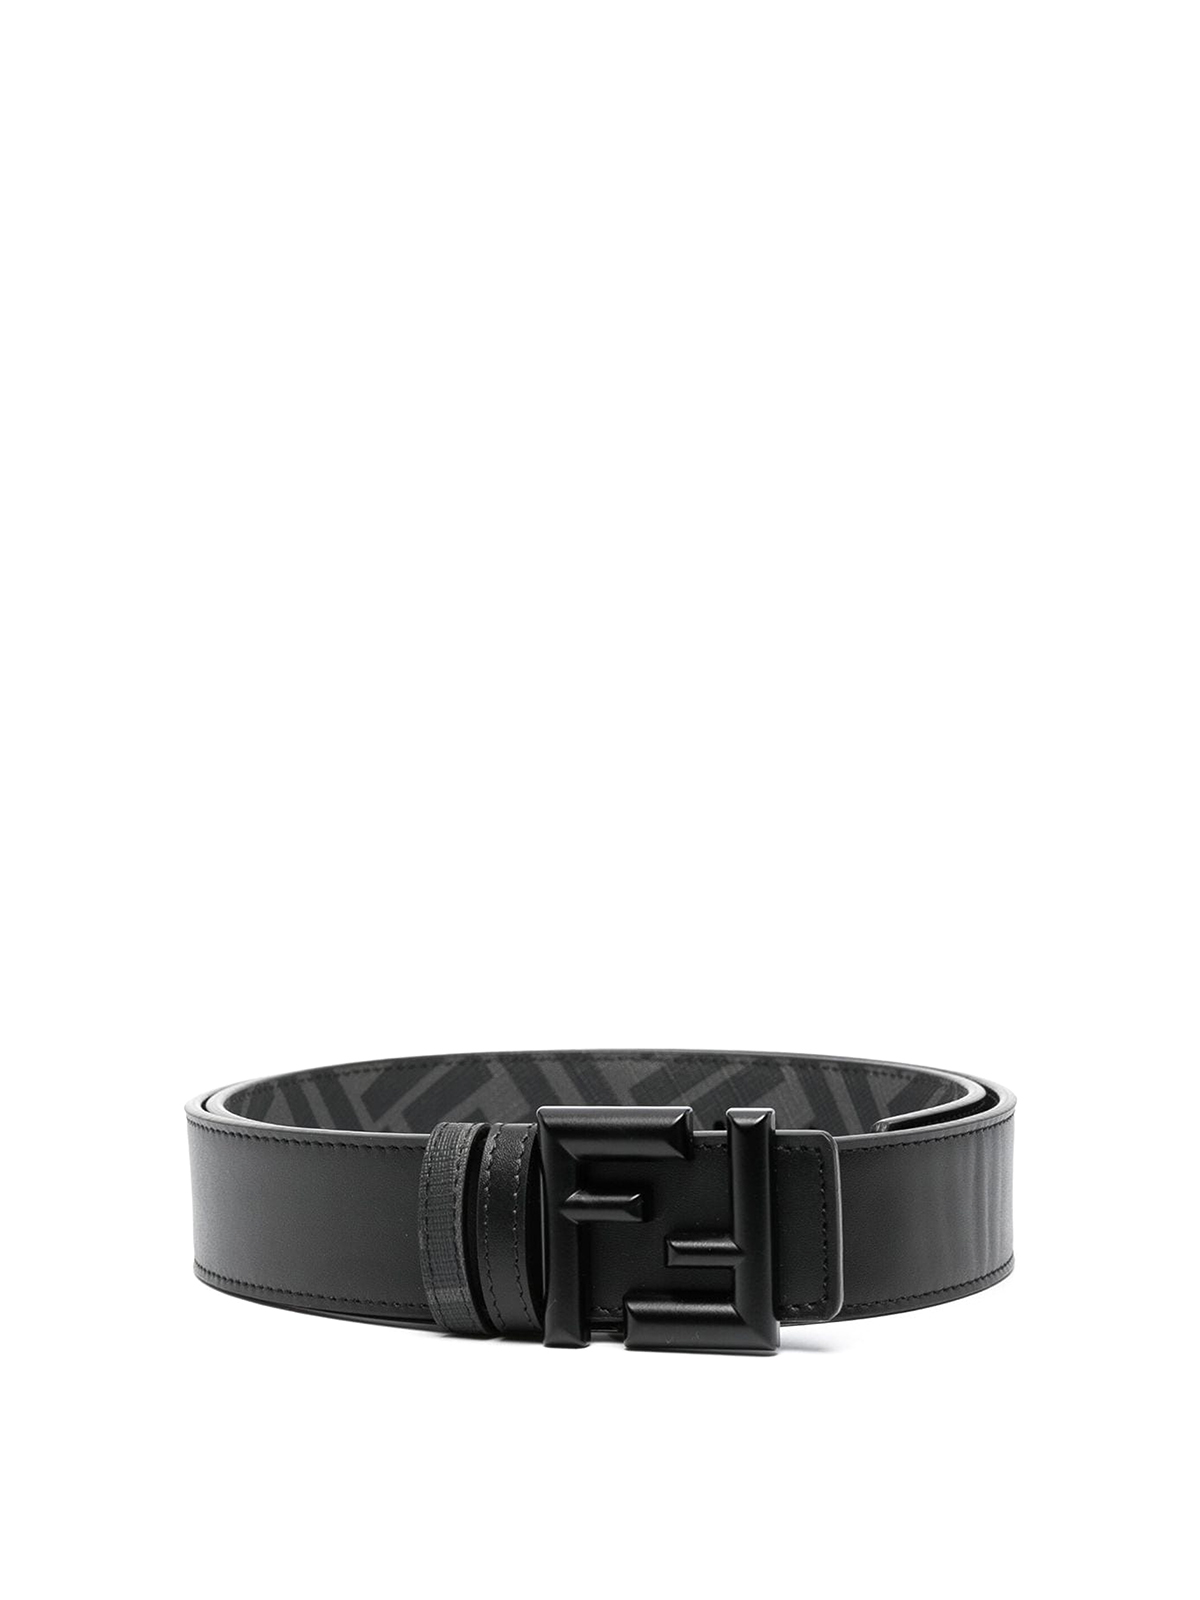 Belts Fendi - Fendi belt black - 7C0491APH9F0QA1 | thebs.com [ikrix.com]